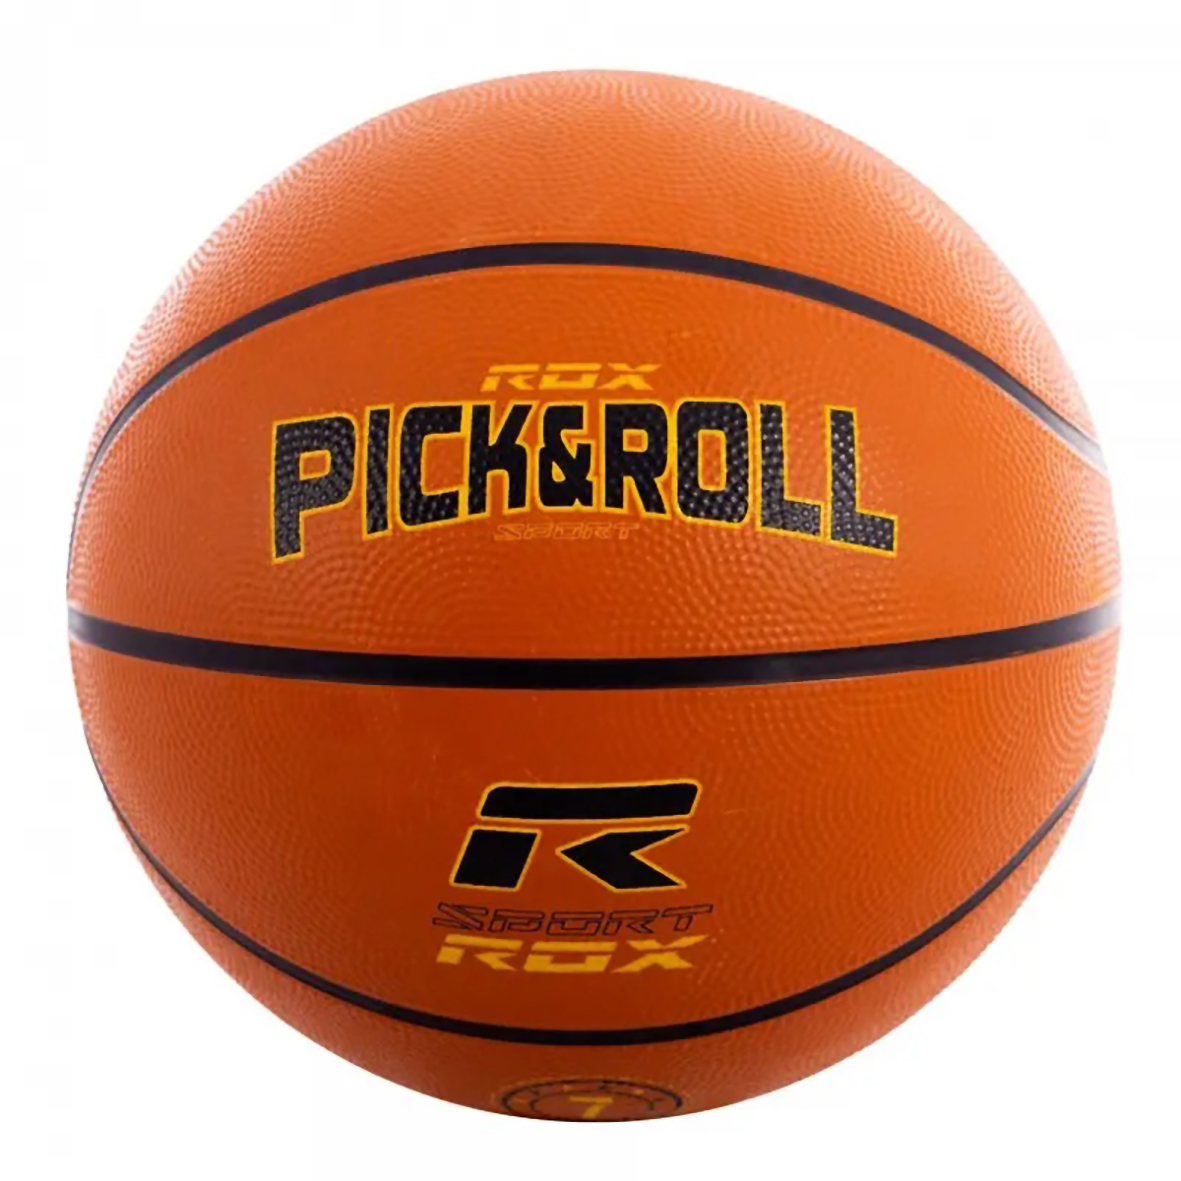 ROX PICK&ROLL NYLON BASKETBALL BALL, SIZE 5.